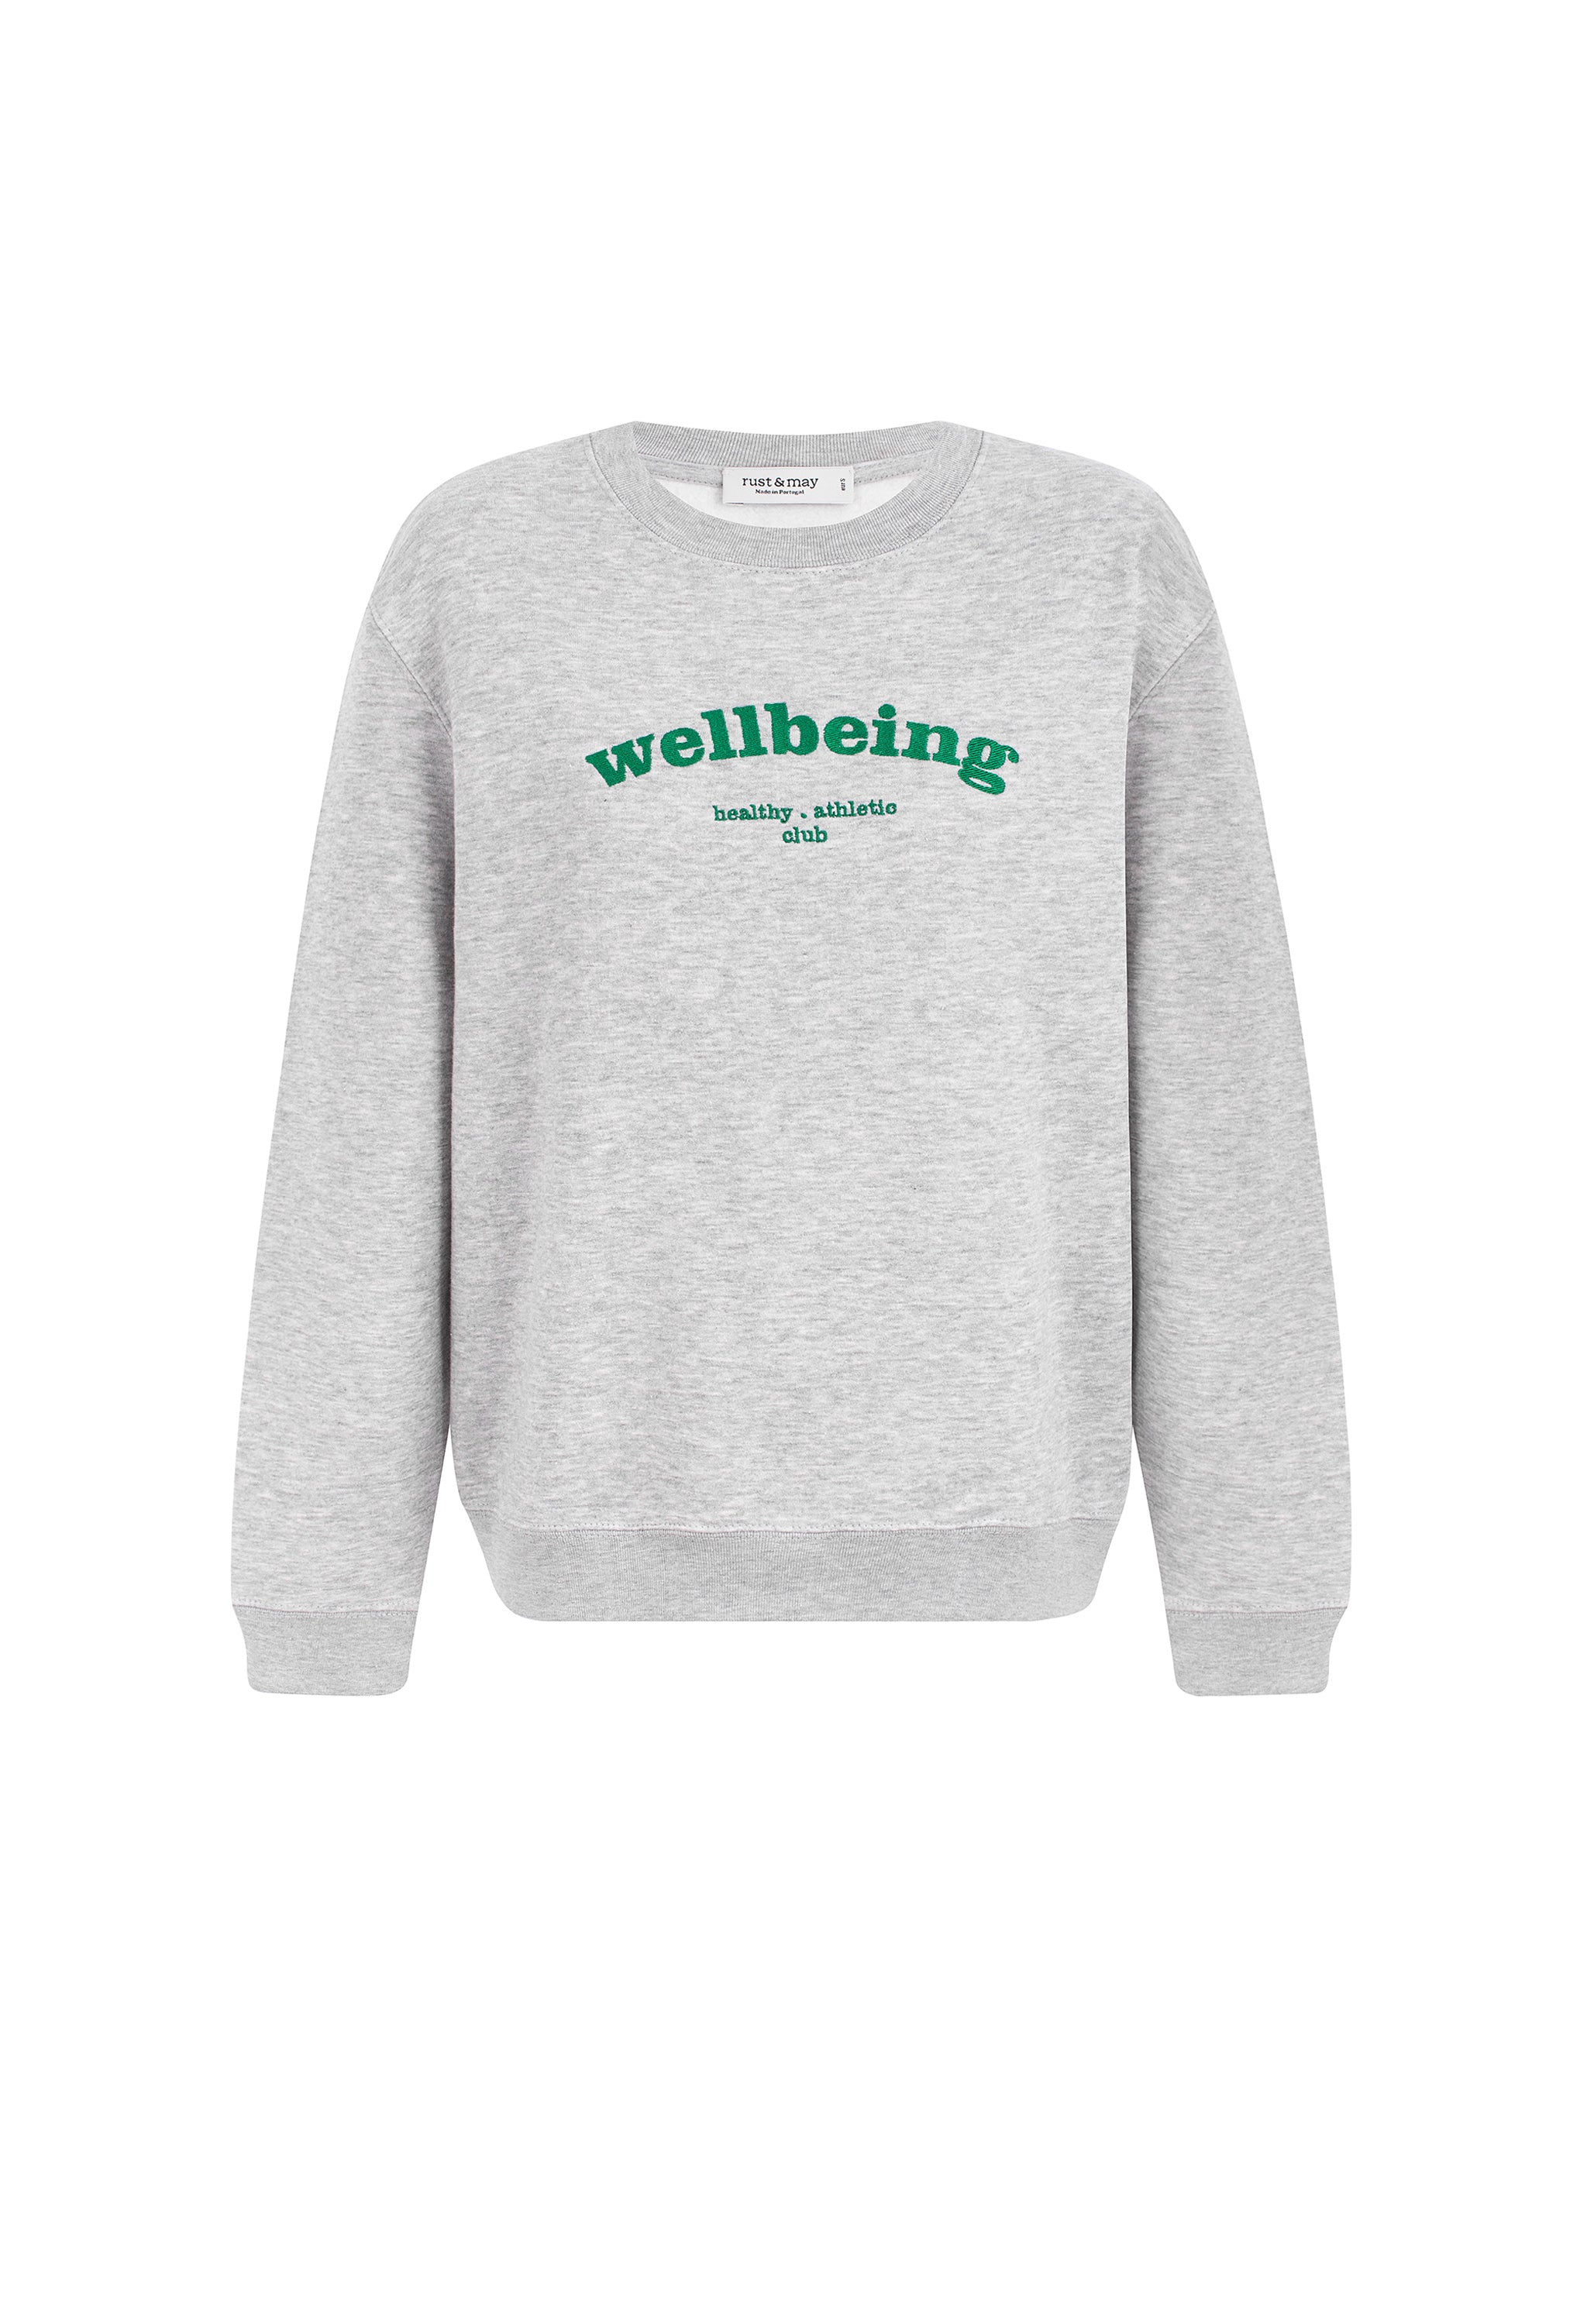 Wellbeing Sweatshirt